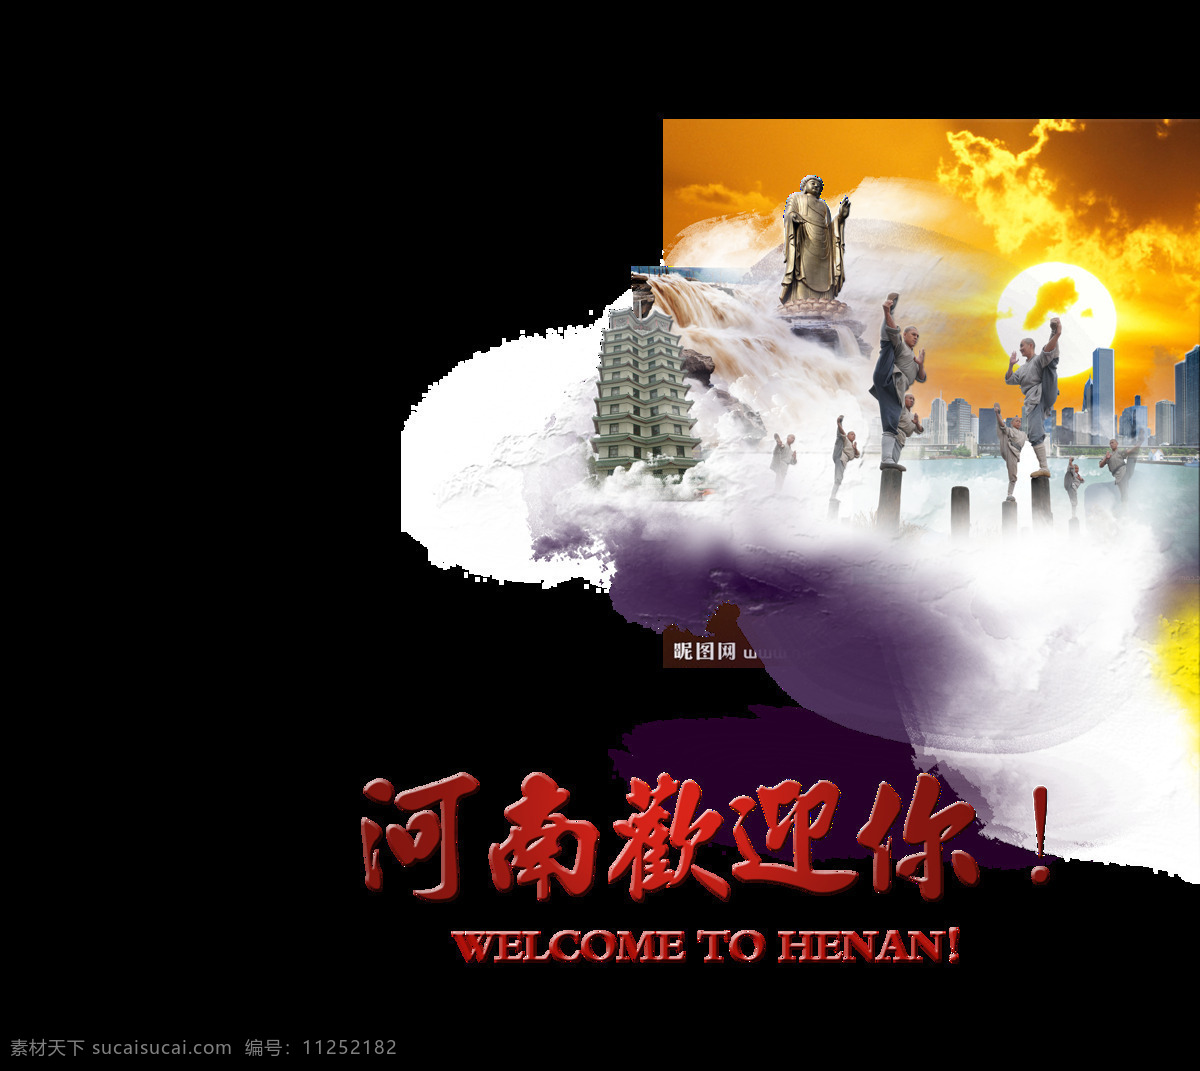 河南 欢迎 旅游 少林寺 艺术 字 字体 广告 促销 河南欢迎你 艺术字 免抠图 海报 宣传